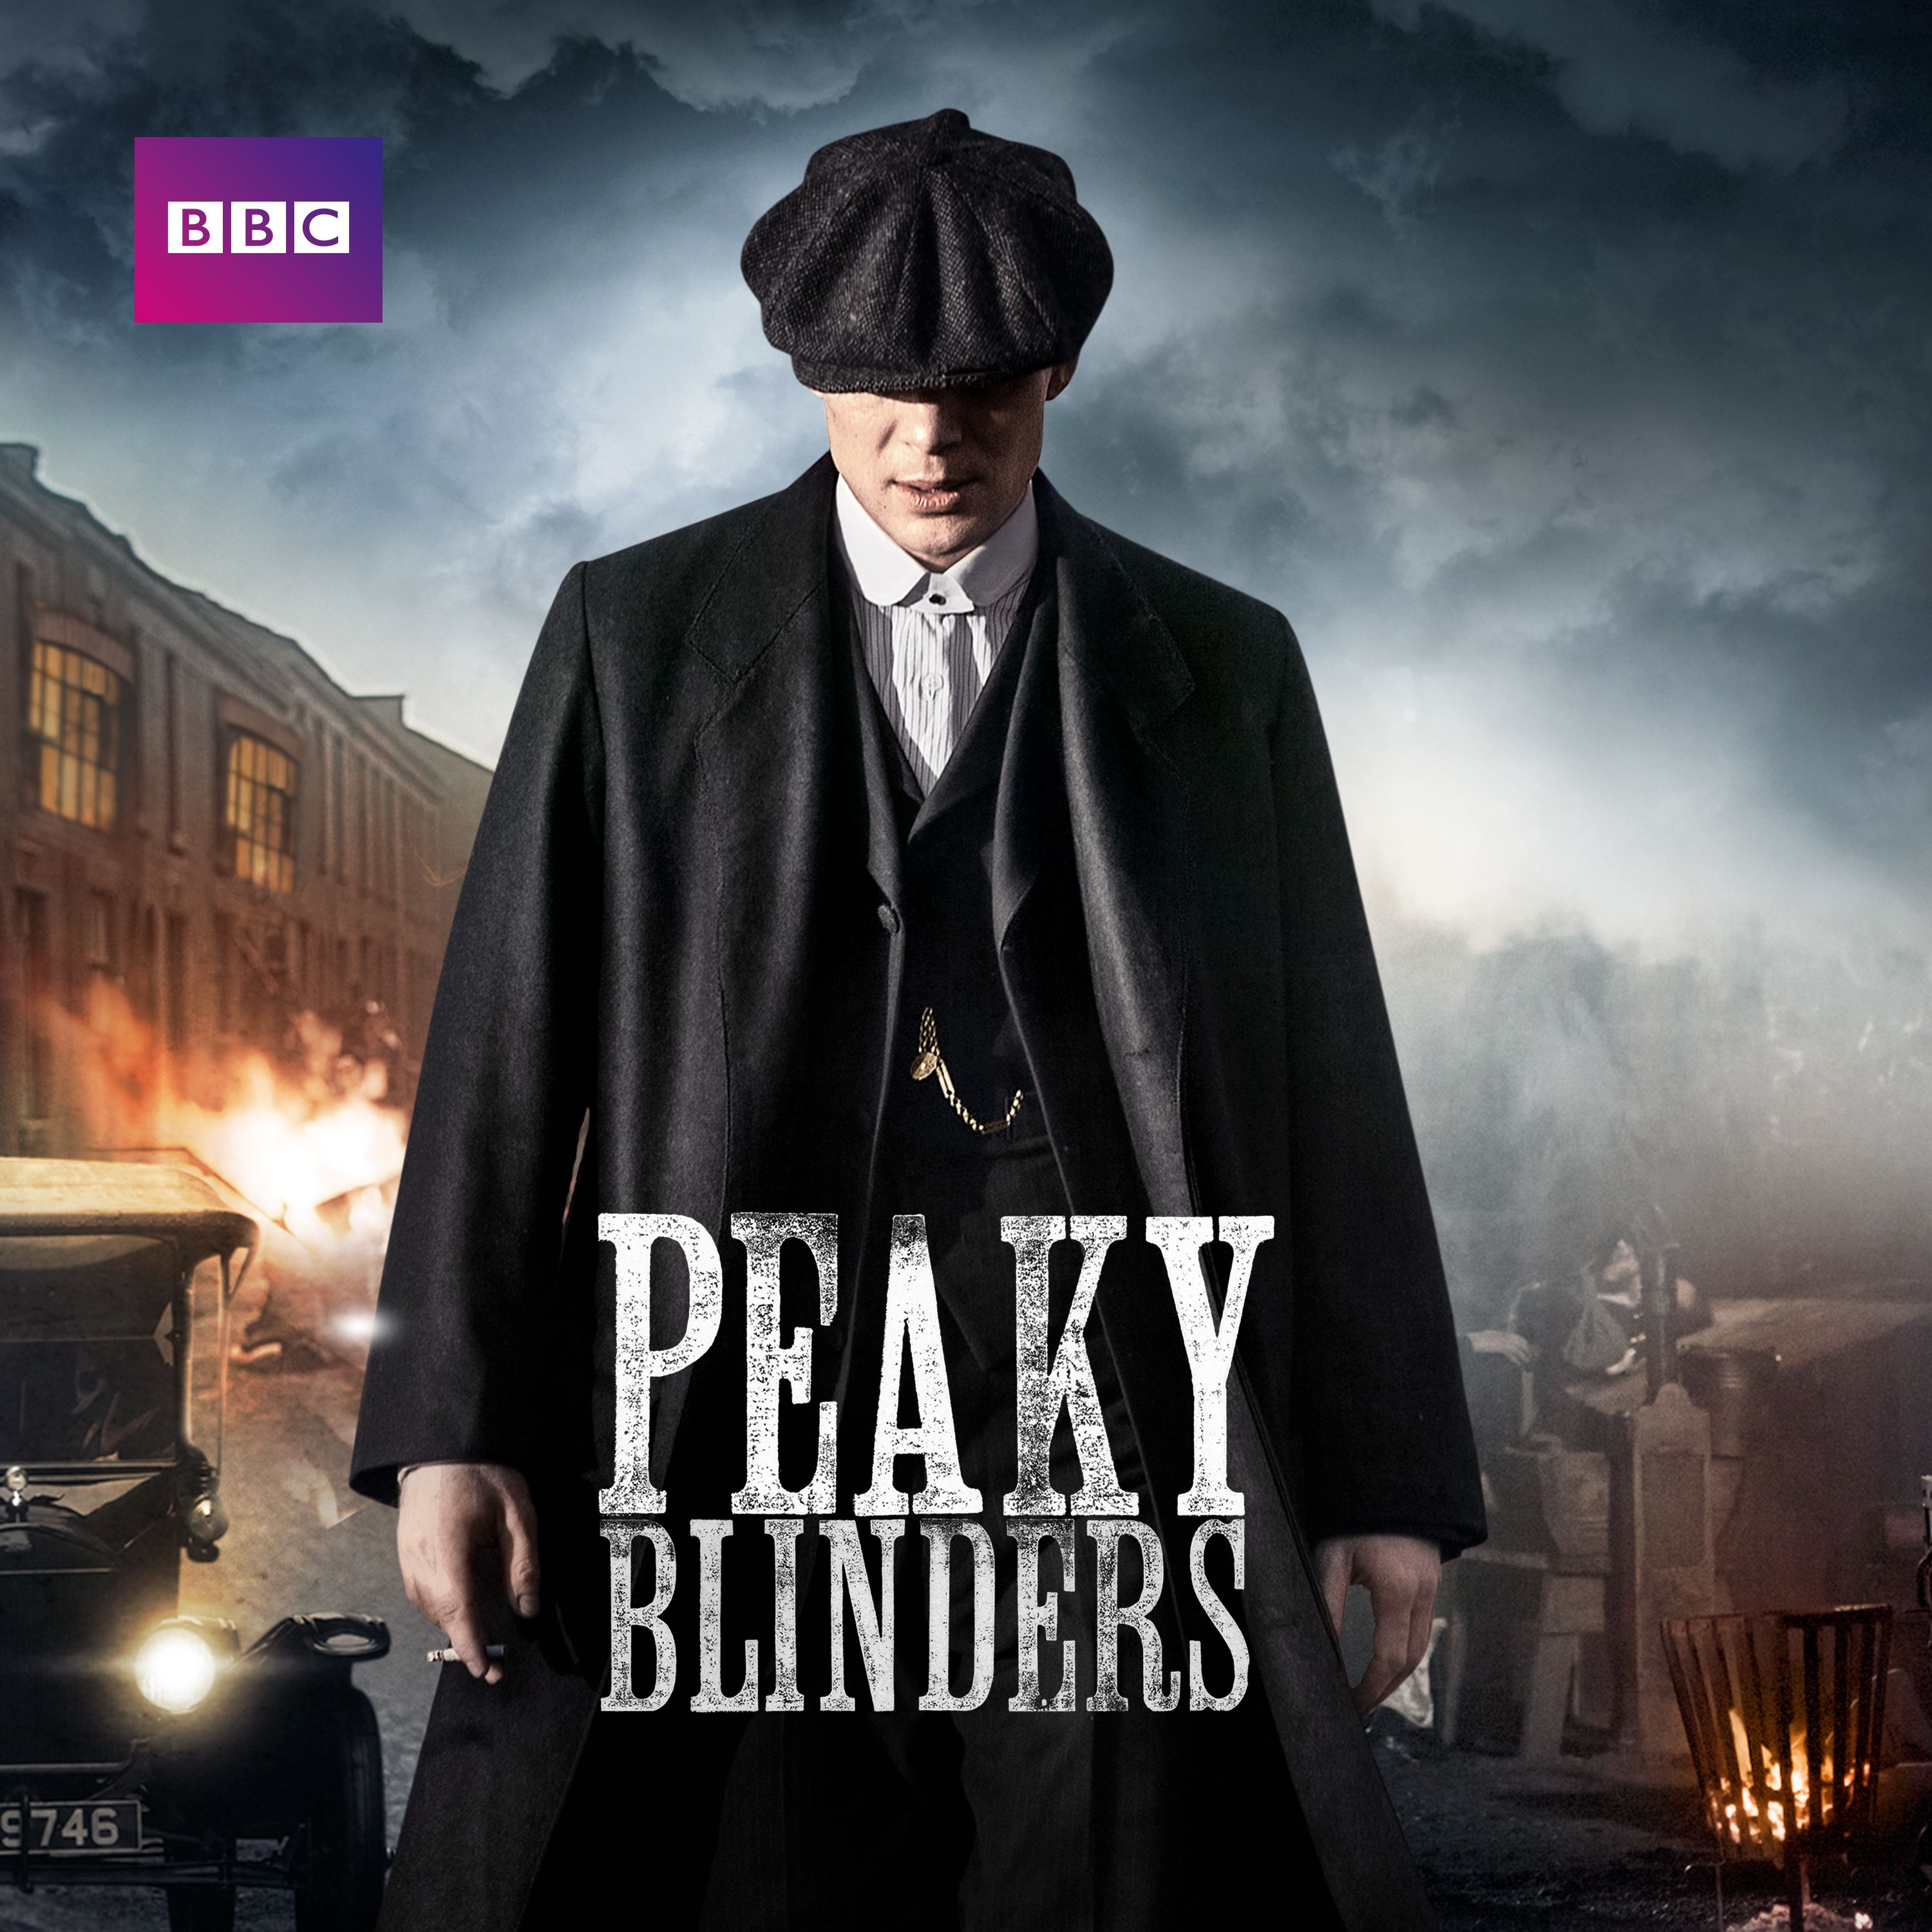 Peaky Blinders: Season 4 - TV on Google Play